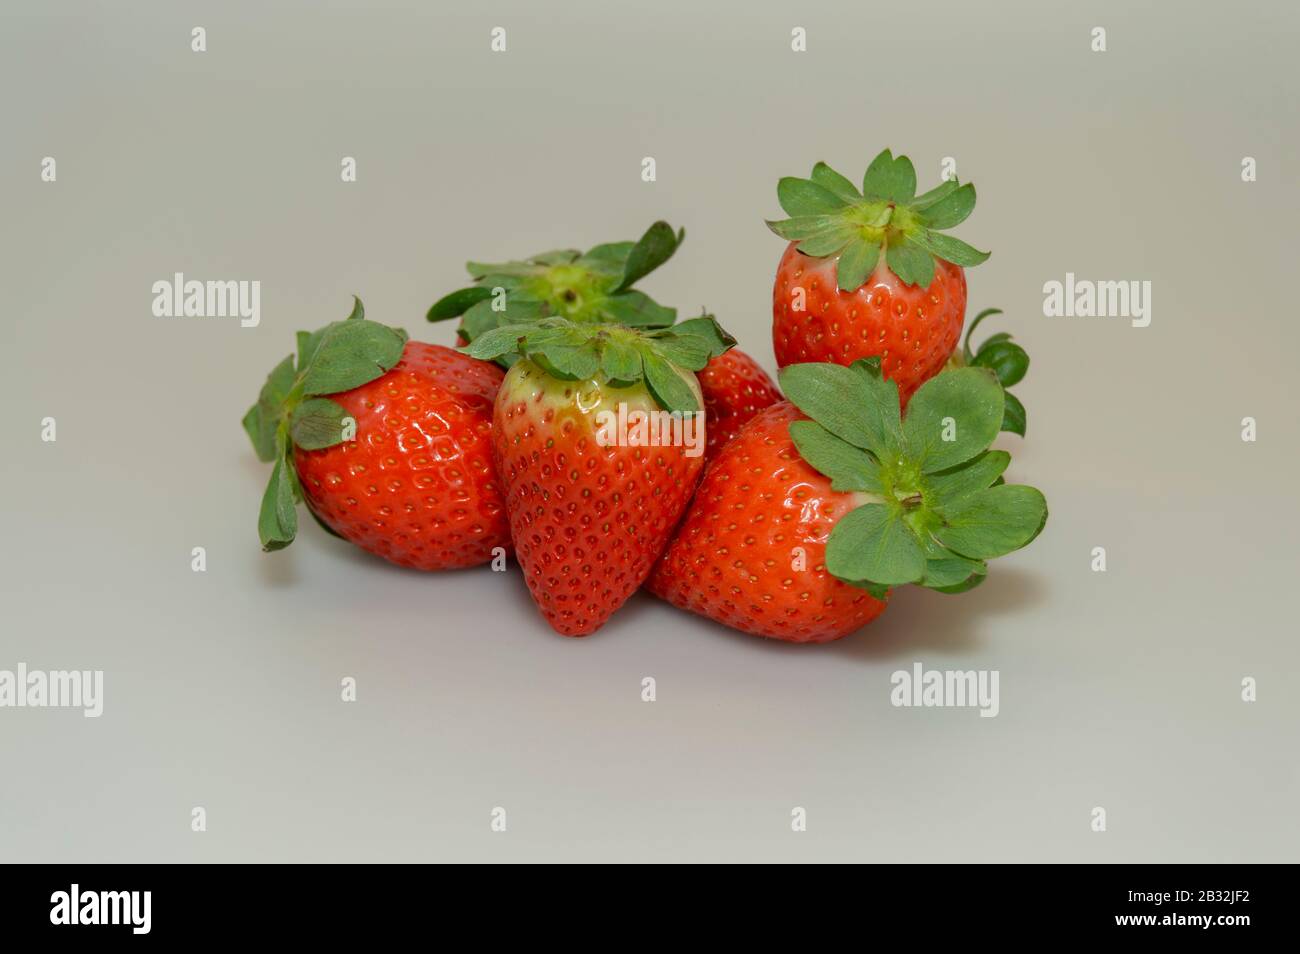 Erdbeere ist eine rote und niedrige Frucht. Es gibt mehrere Erdbeerarten, die in verschiedenen Teilen der Welt angebaut werden. Stockfoto